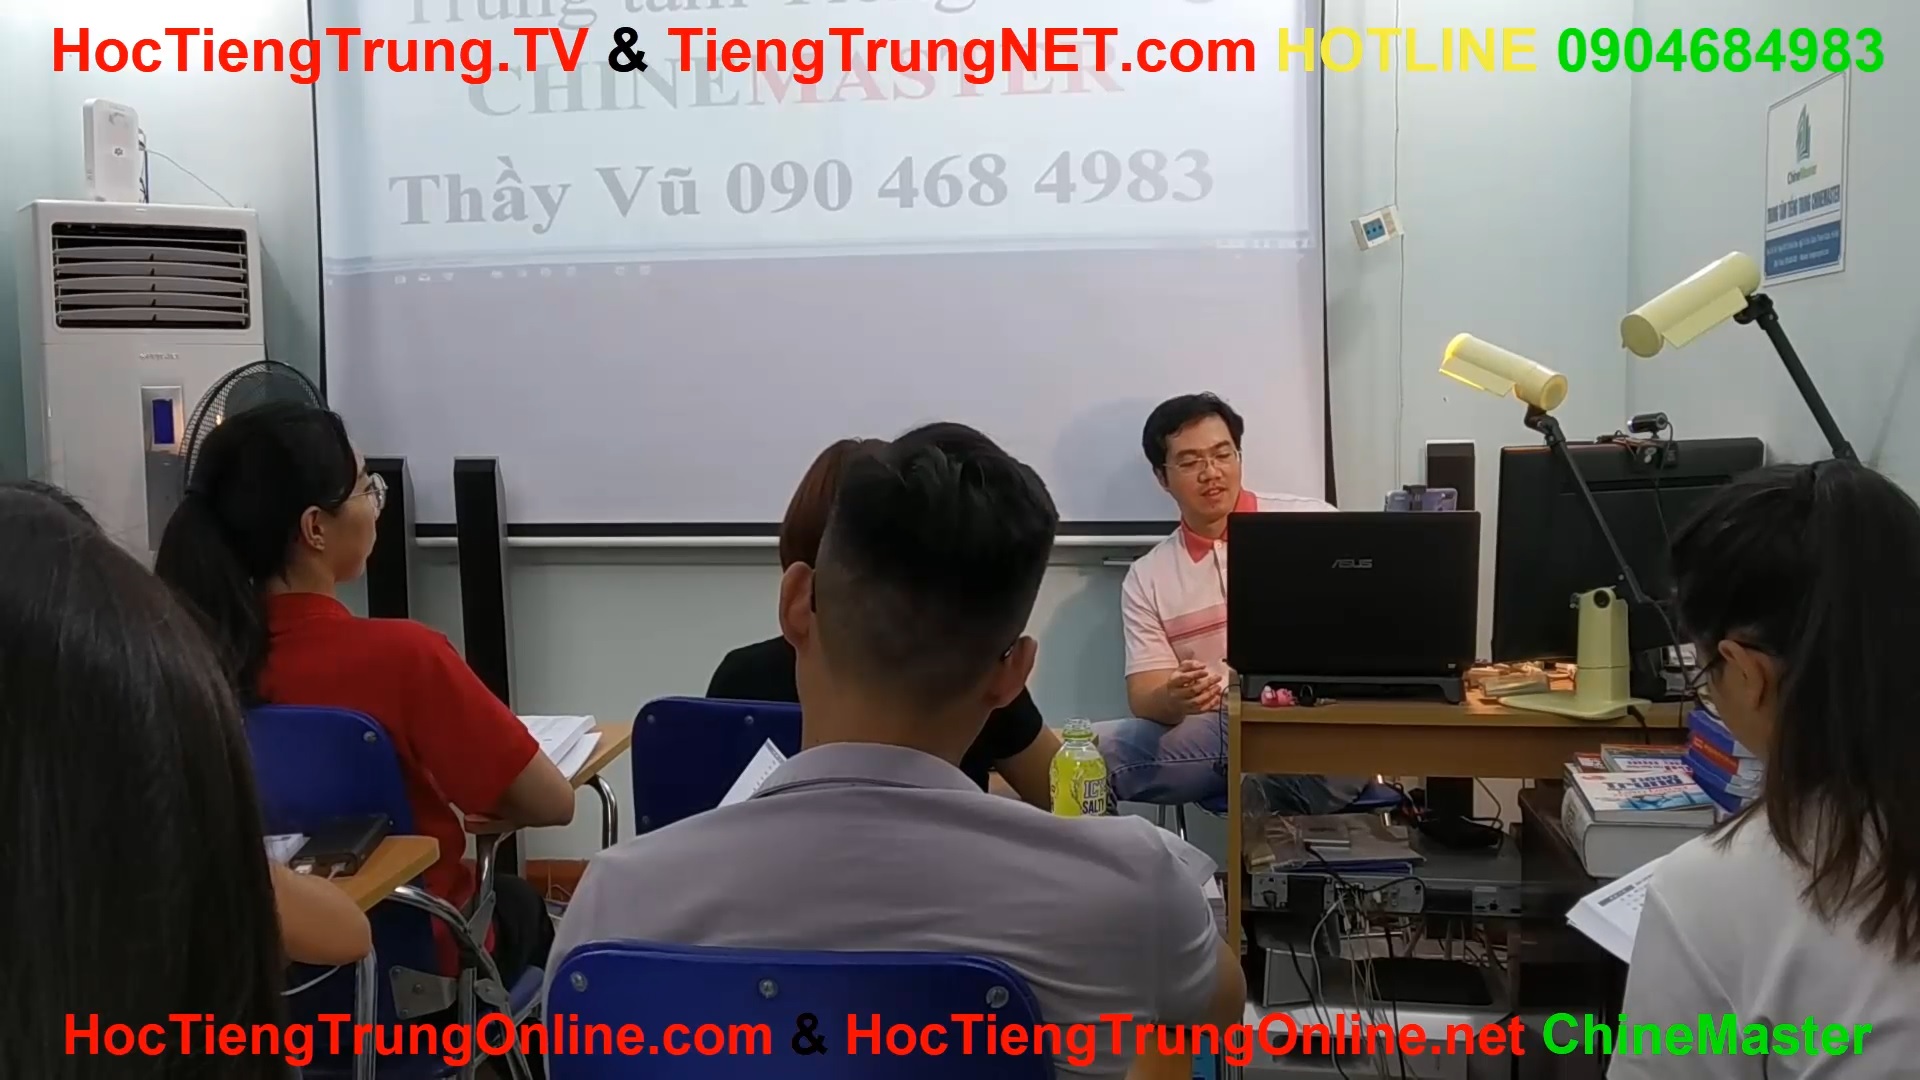 Trung tâm chuyên đào tạo tiếng Trung giao tiếp HSK ChineMaster Thầy Vũ tại Quận Thanh Xuân Hà Nội.